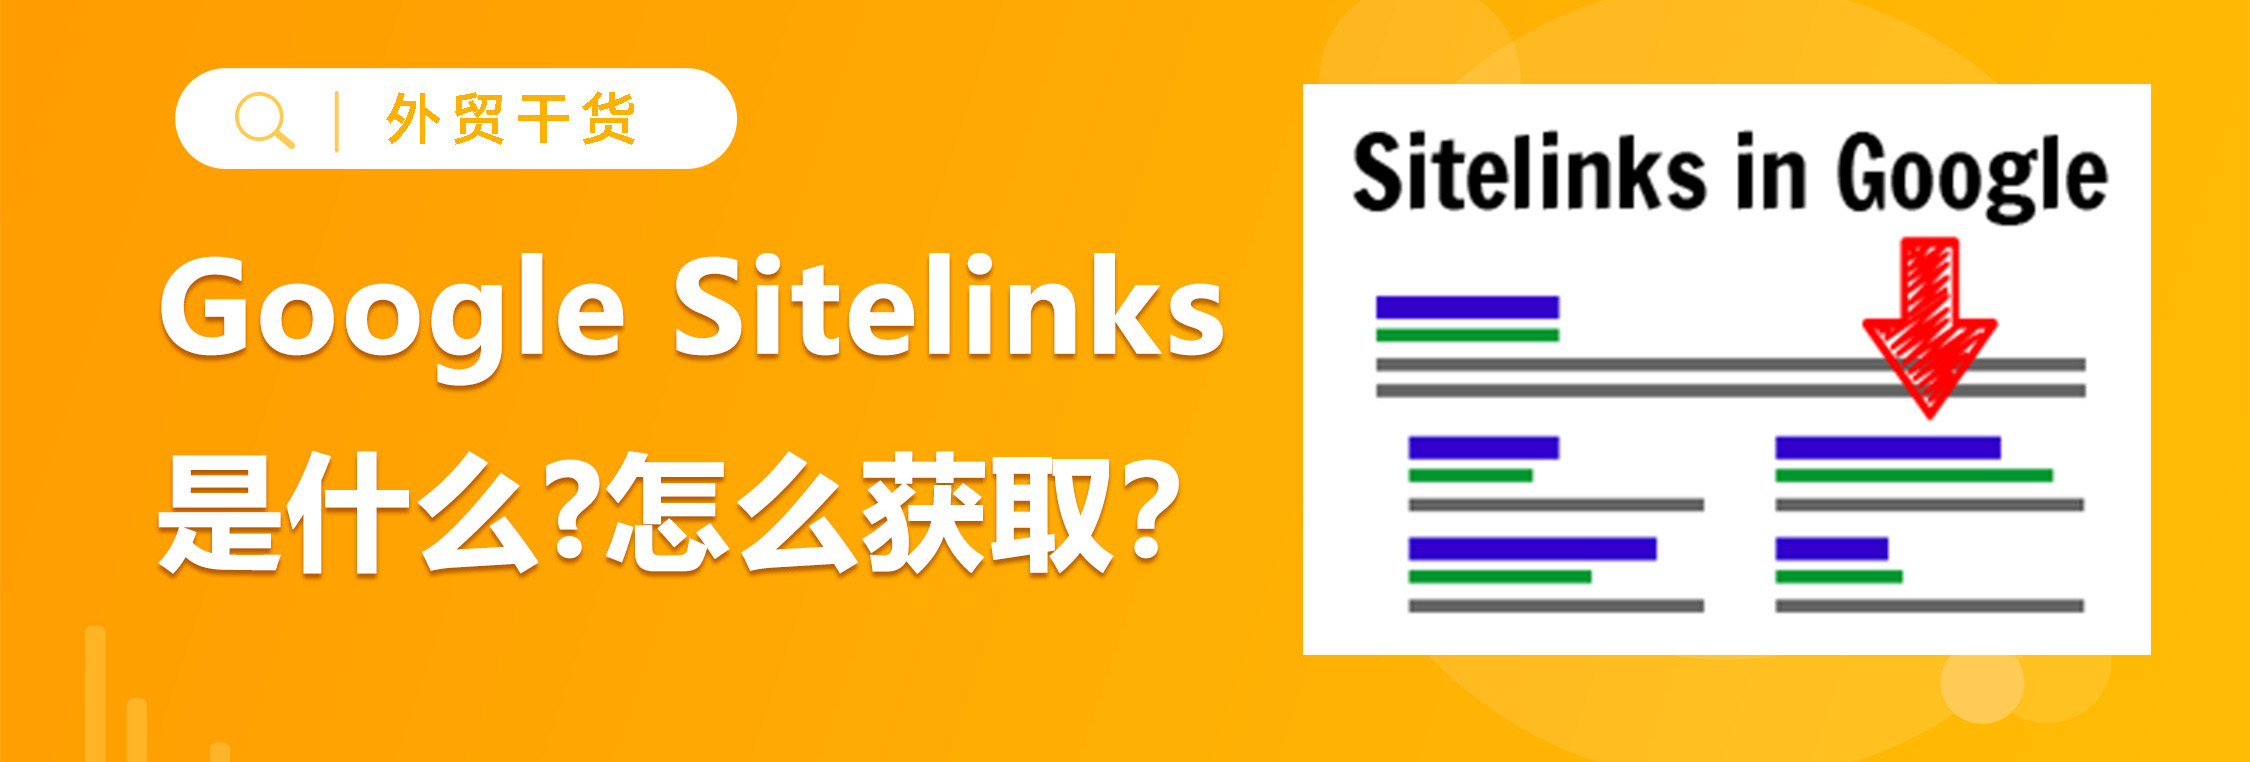 什么是Google Sitelinks?如何获取？